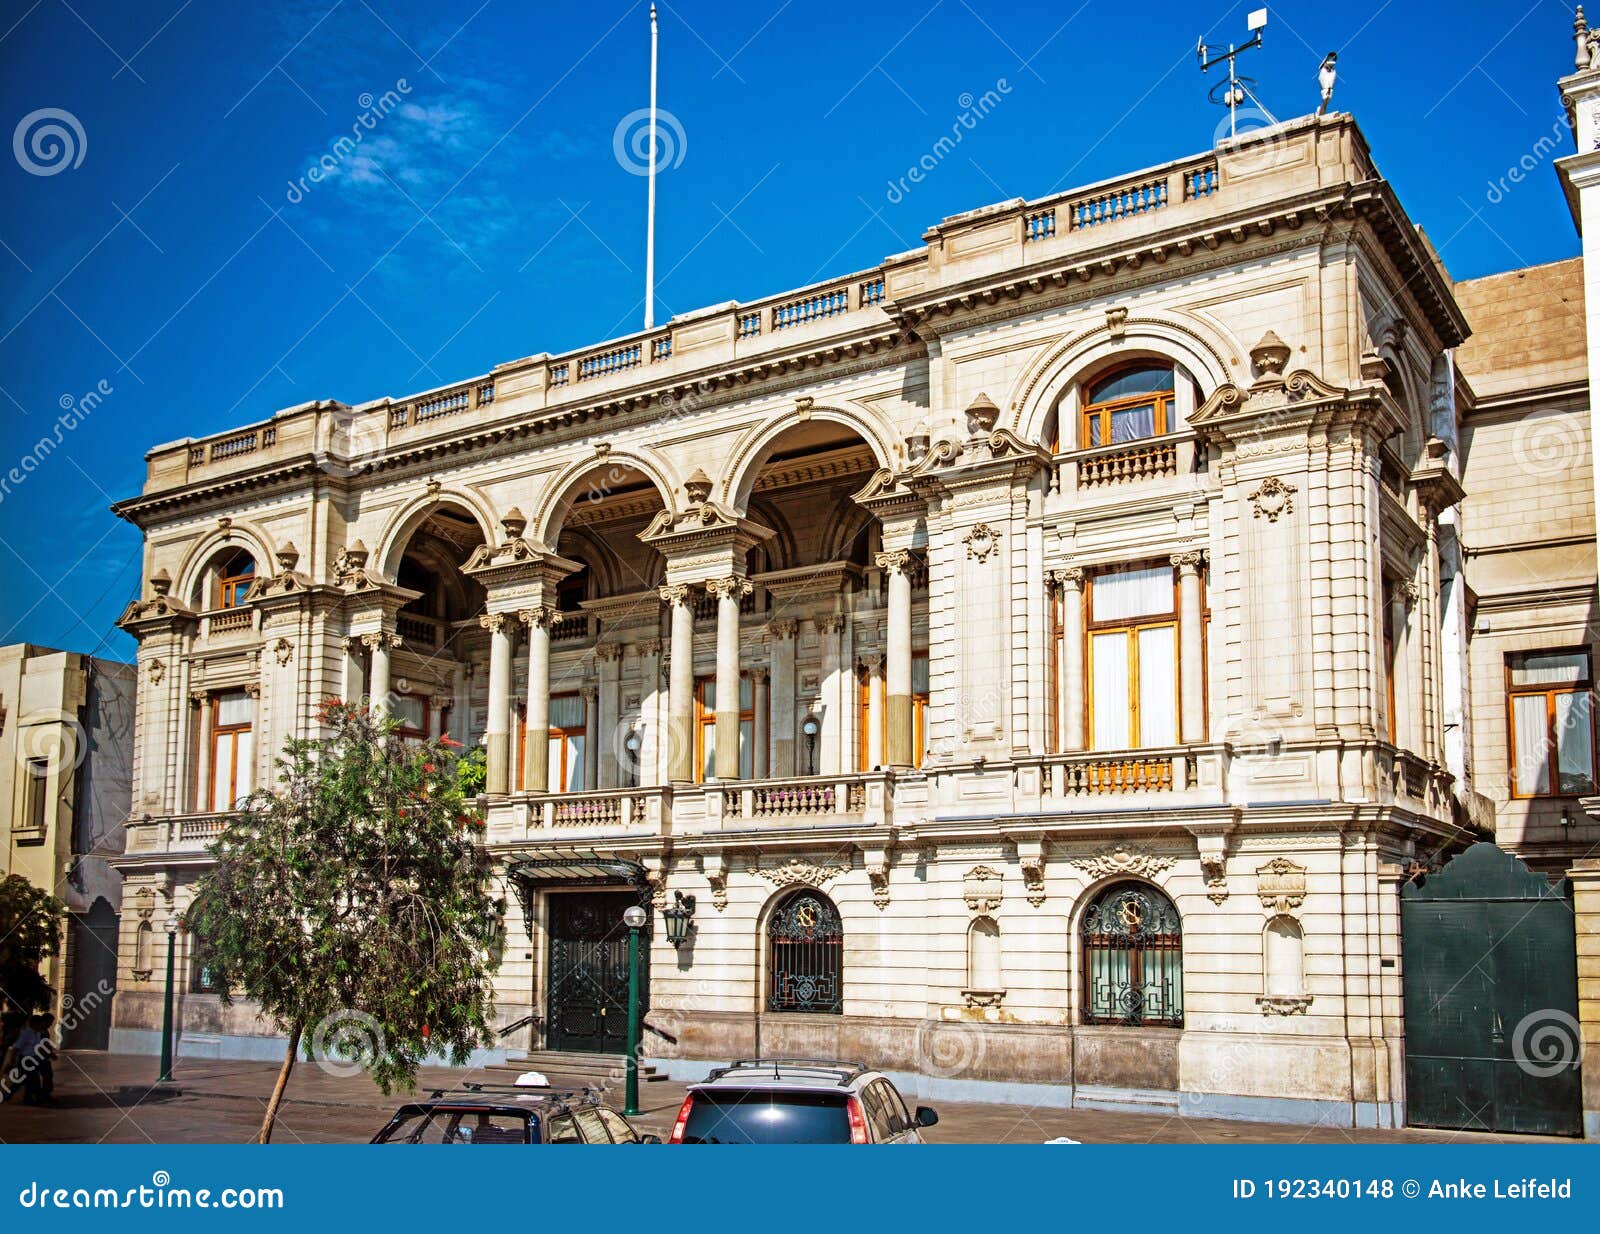 File:2017 Lima - Club Nacional en la Plaza San Martín.jpg - Wikipedia